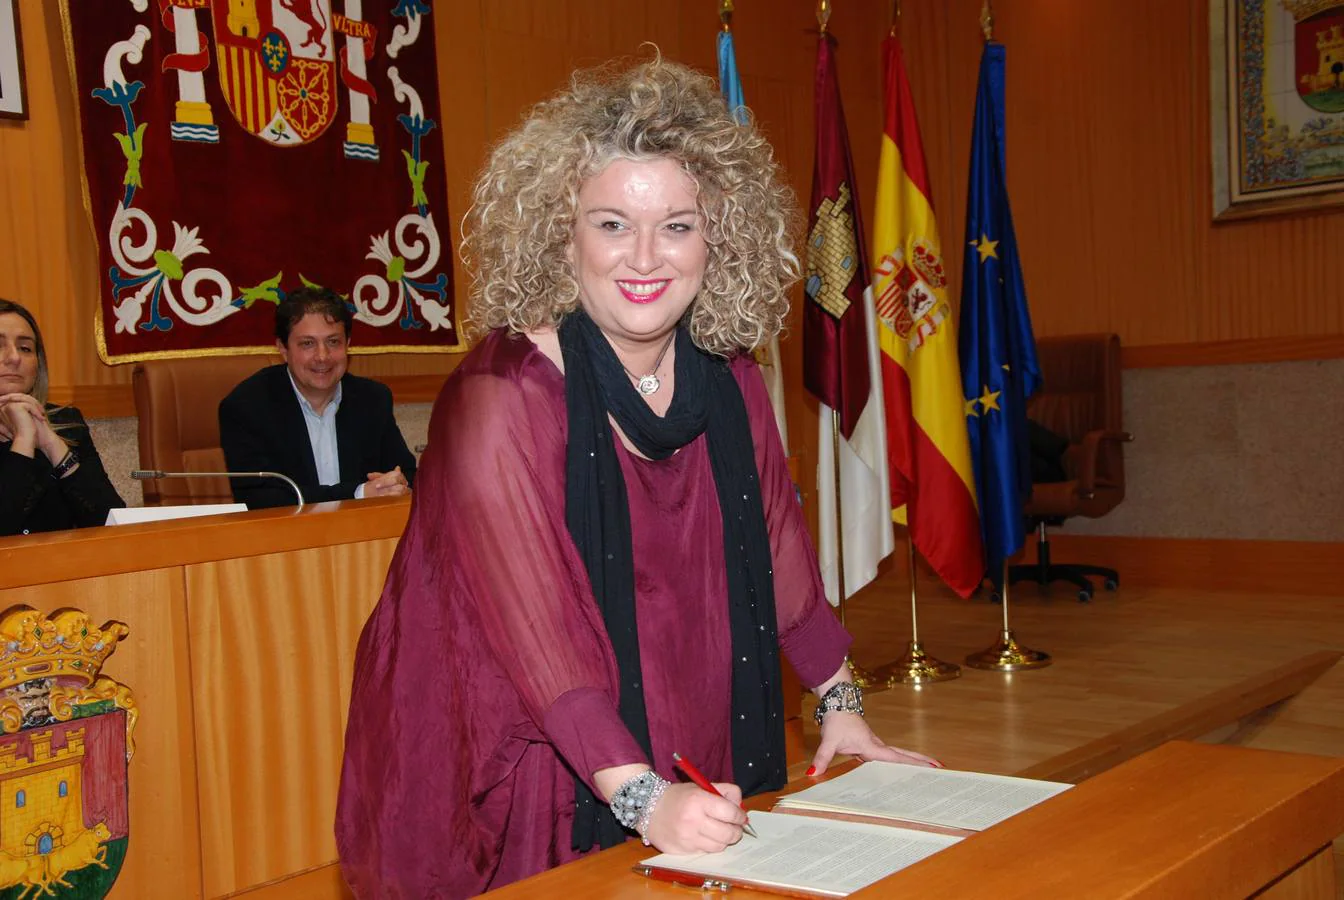 La alcaldesa de Aranjuez, Cristina Moreno, ha ofrecido la posibilidad a los alcaldes de ir de la mano y solicitar al próximo presidente del Gobierno, el impulso a un gran pacto de Estado por el agua